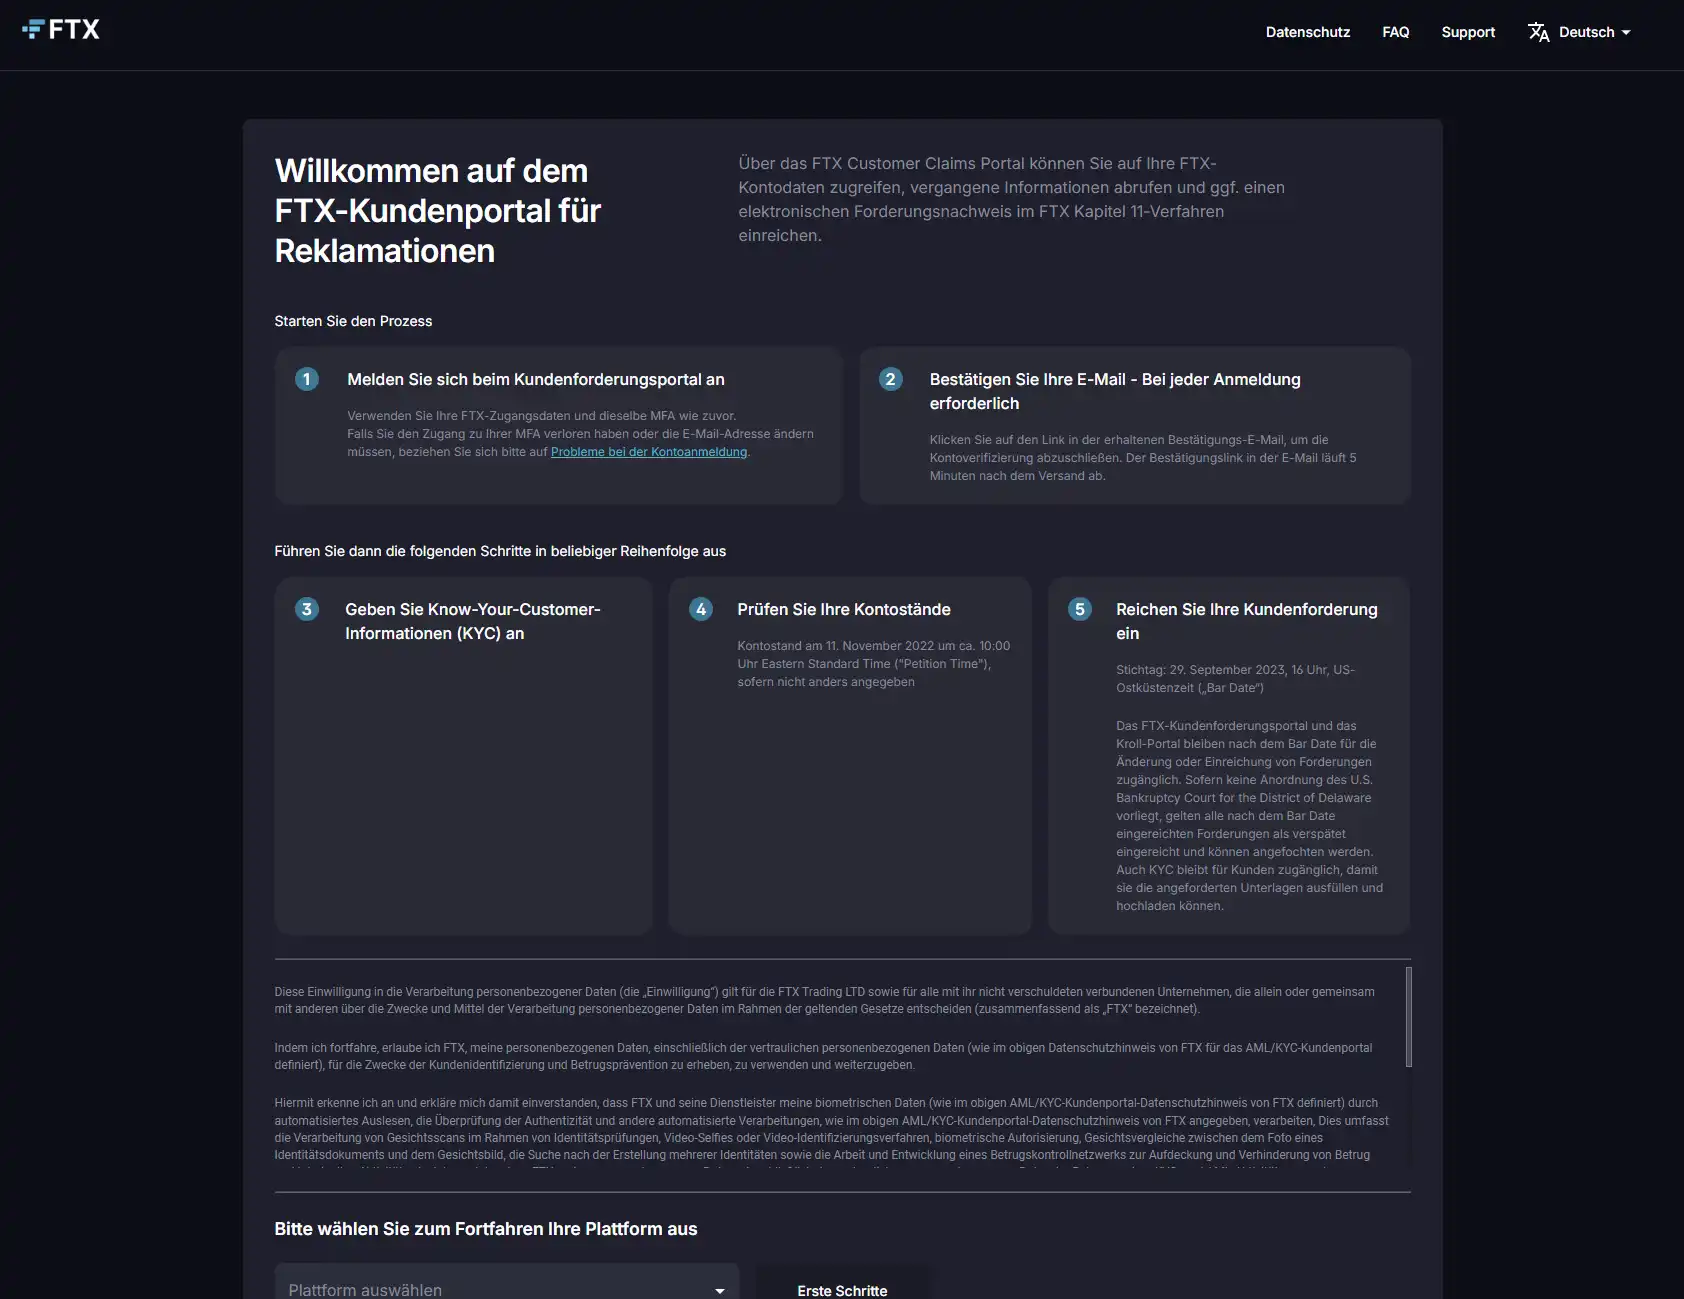 Die Startseite des FTX Customer Claims Portals